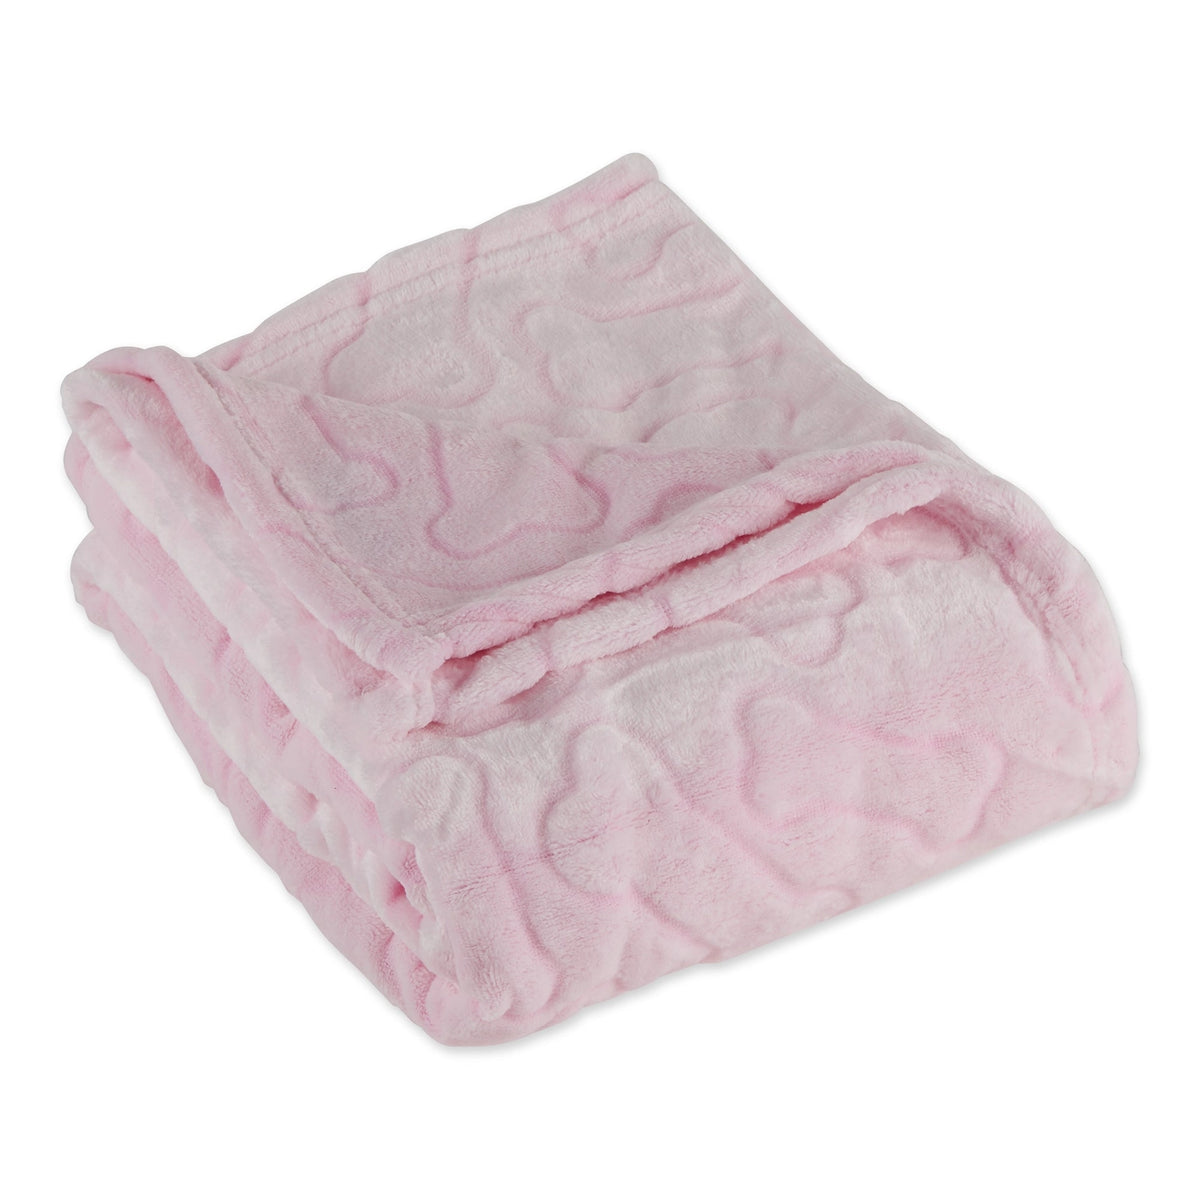 Bone Dry - Blanket Embossed Bone Print for Pets Pink